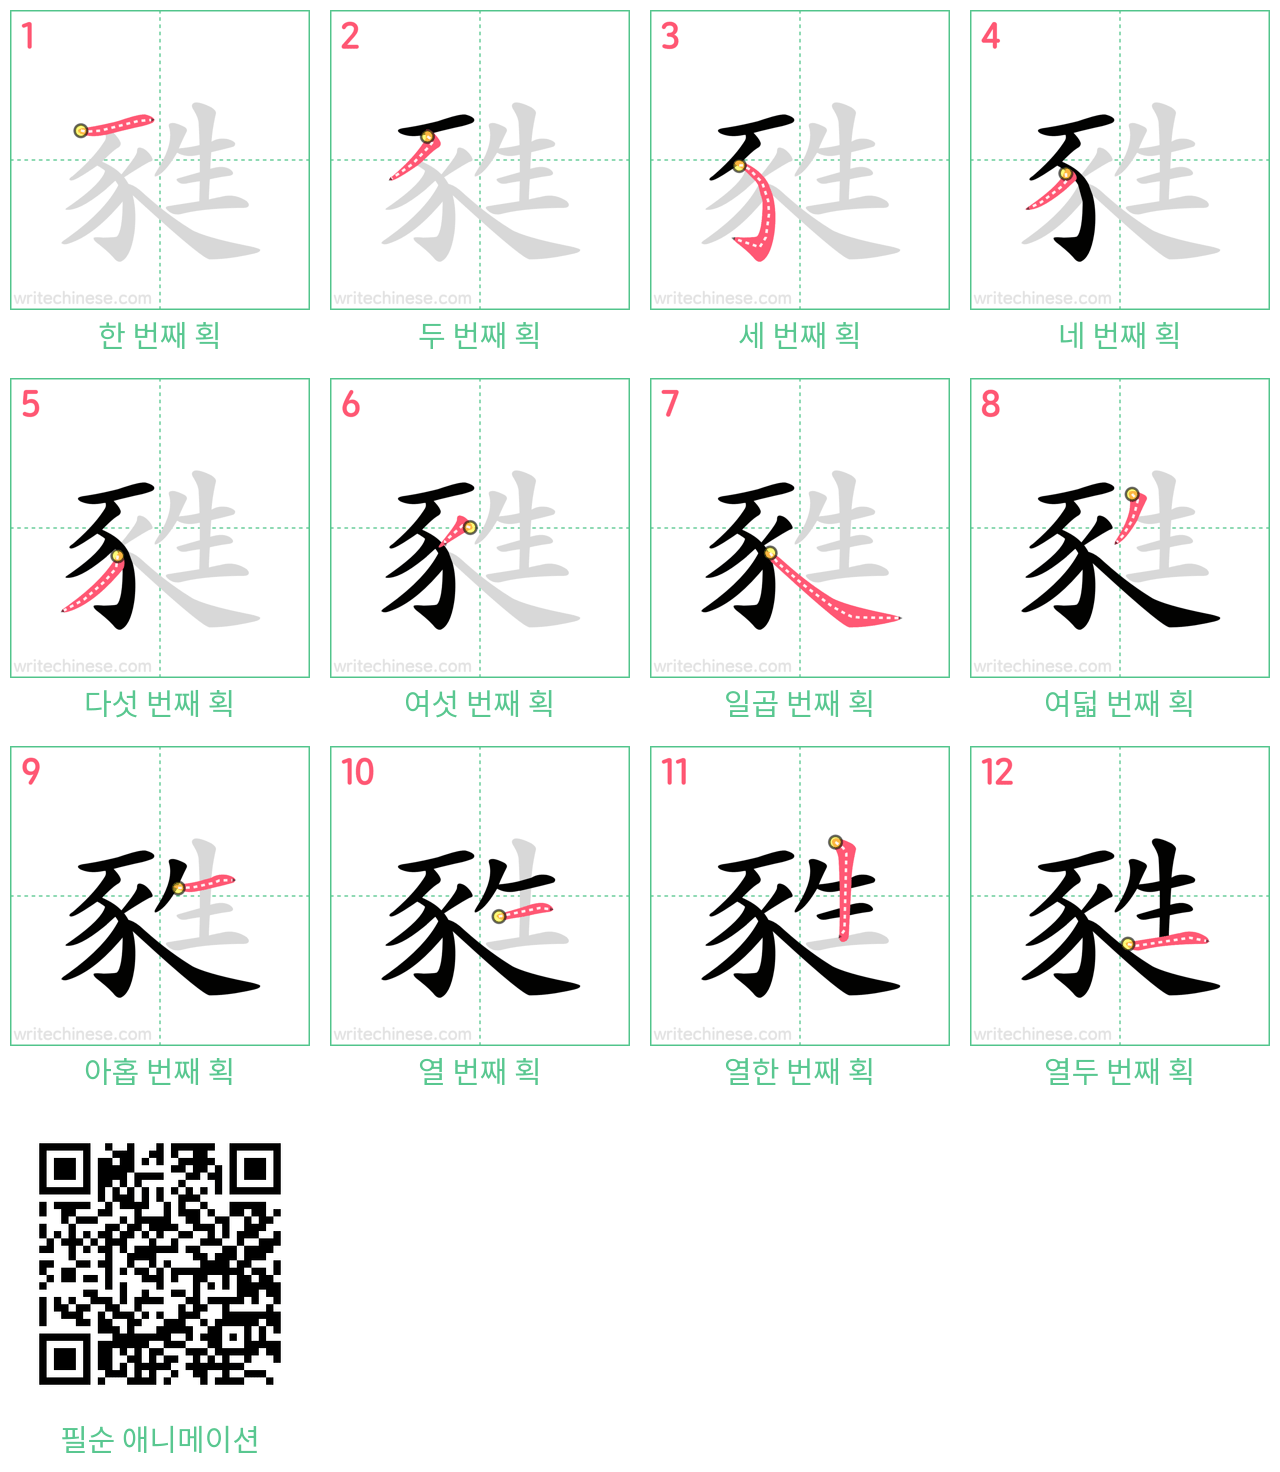 甤 step-by-step stroke order diagrams